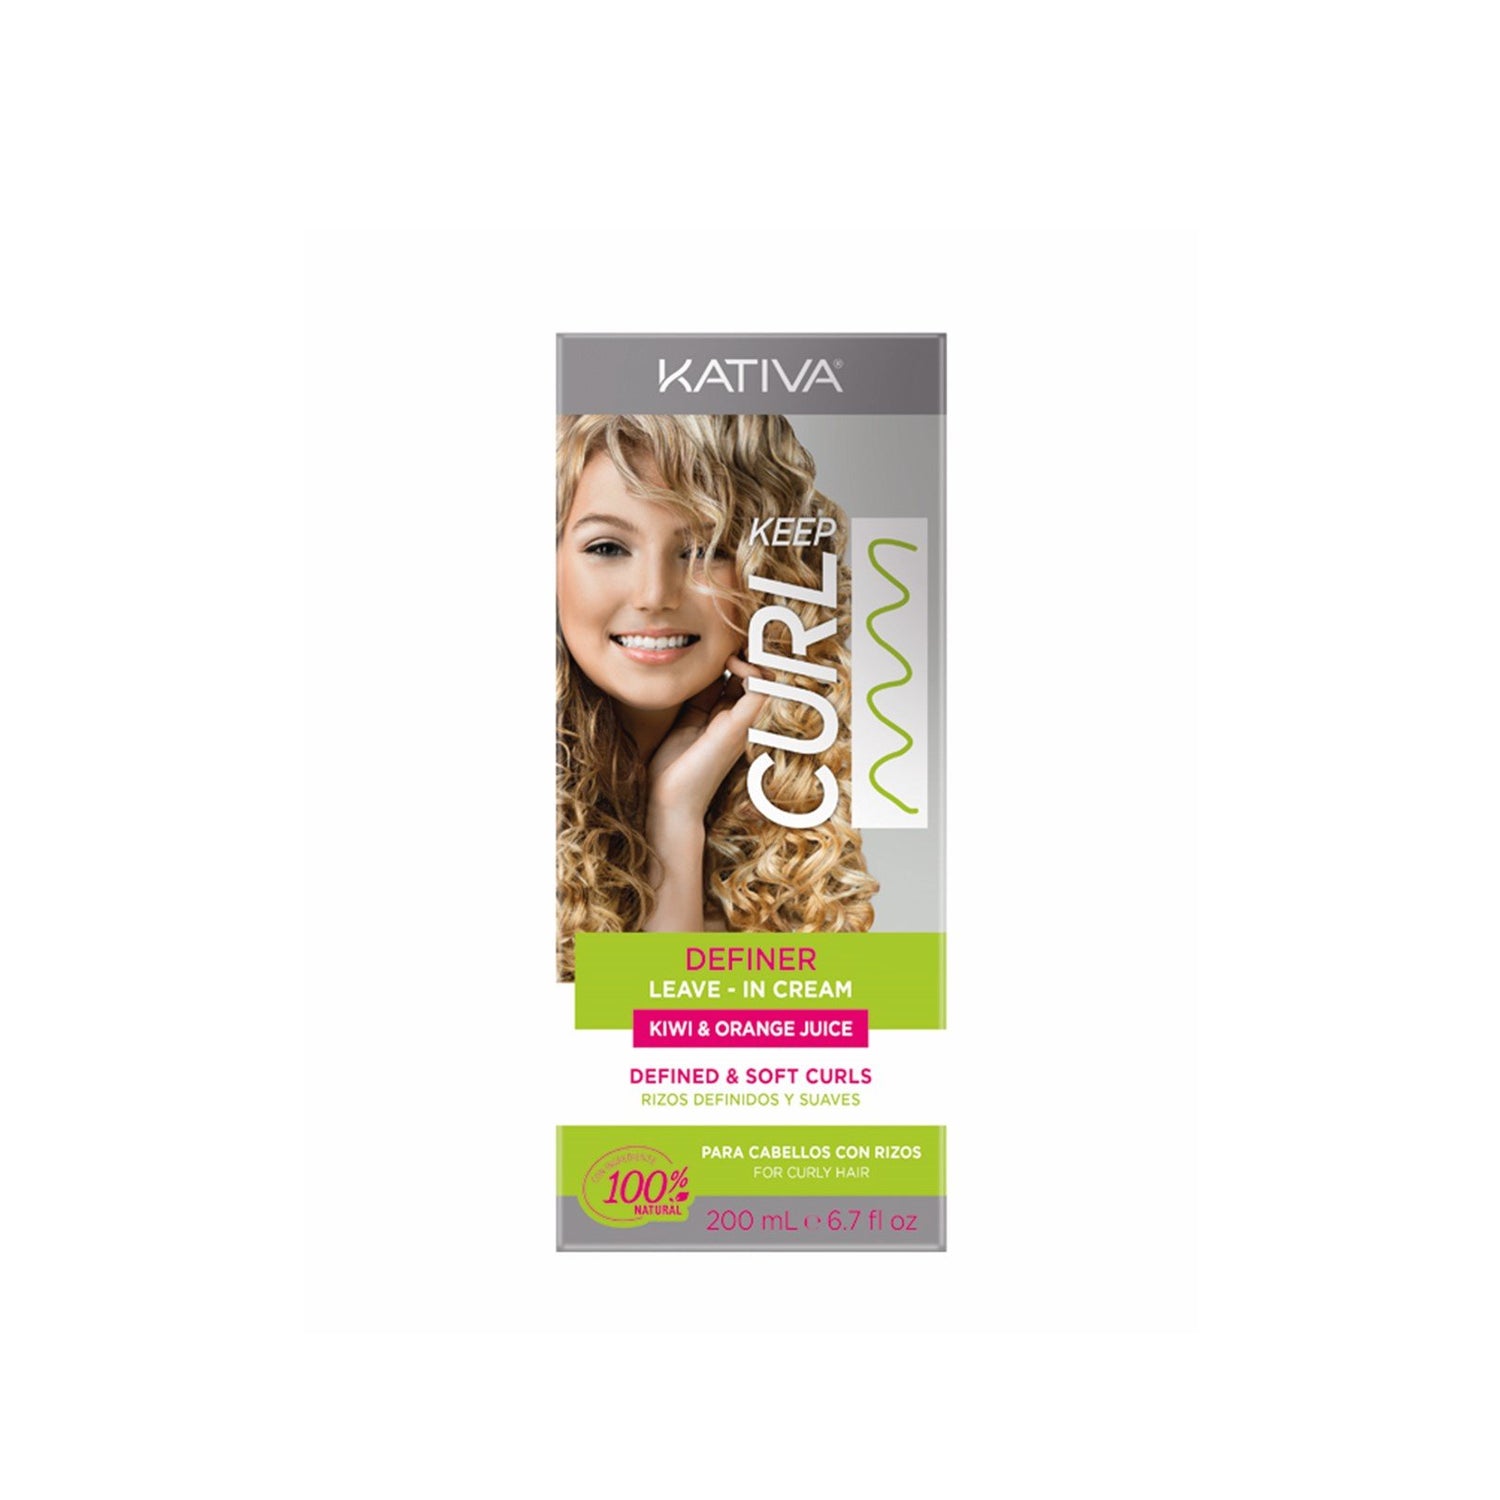 Kativa Keep Curl Definer Leave-In Cream Kiwi &amp; Orange Juice 200ml